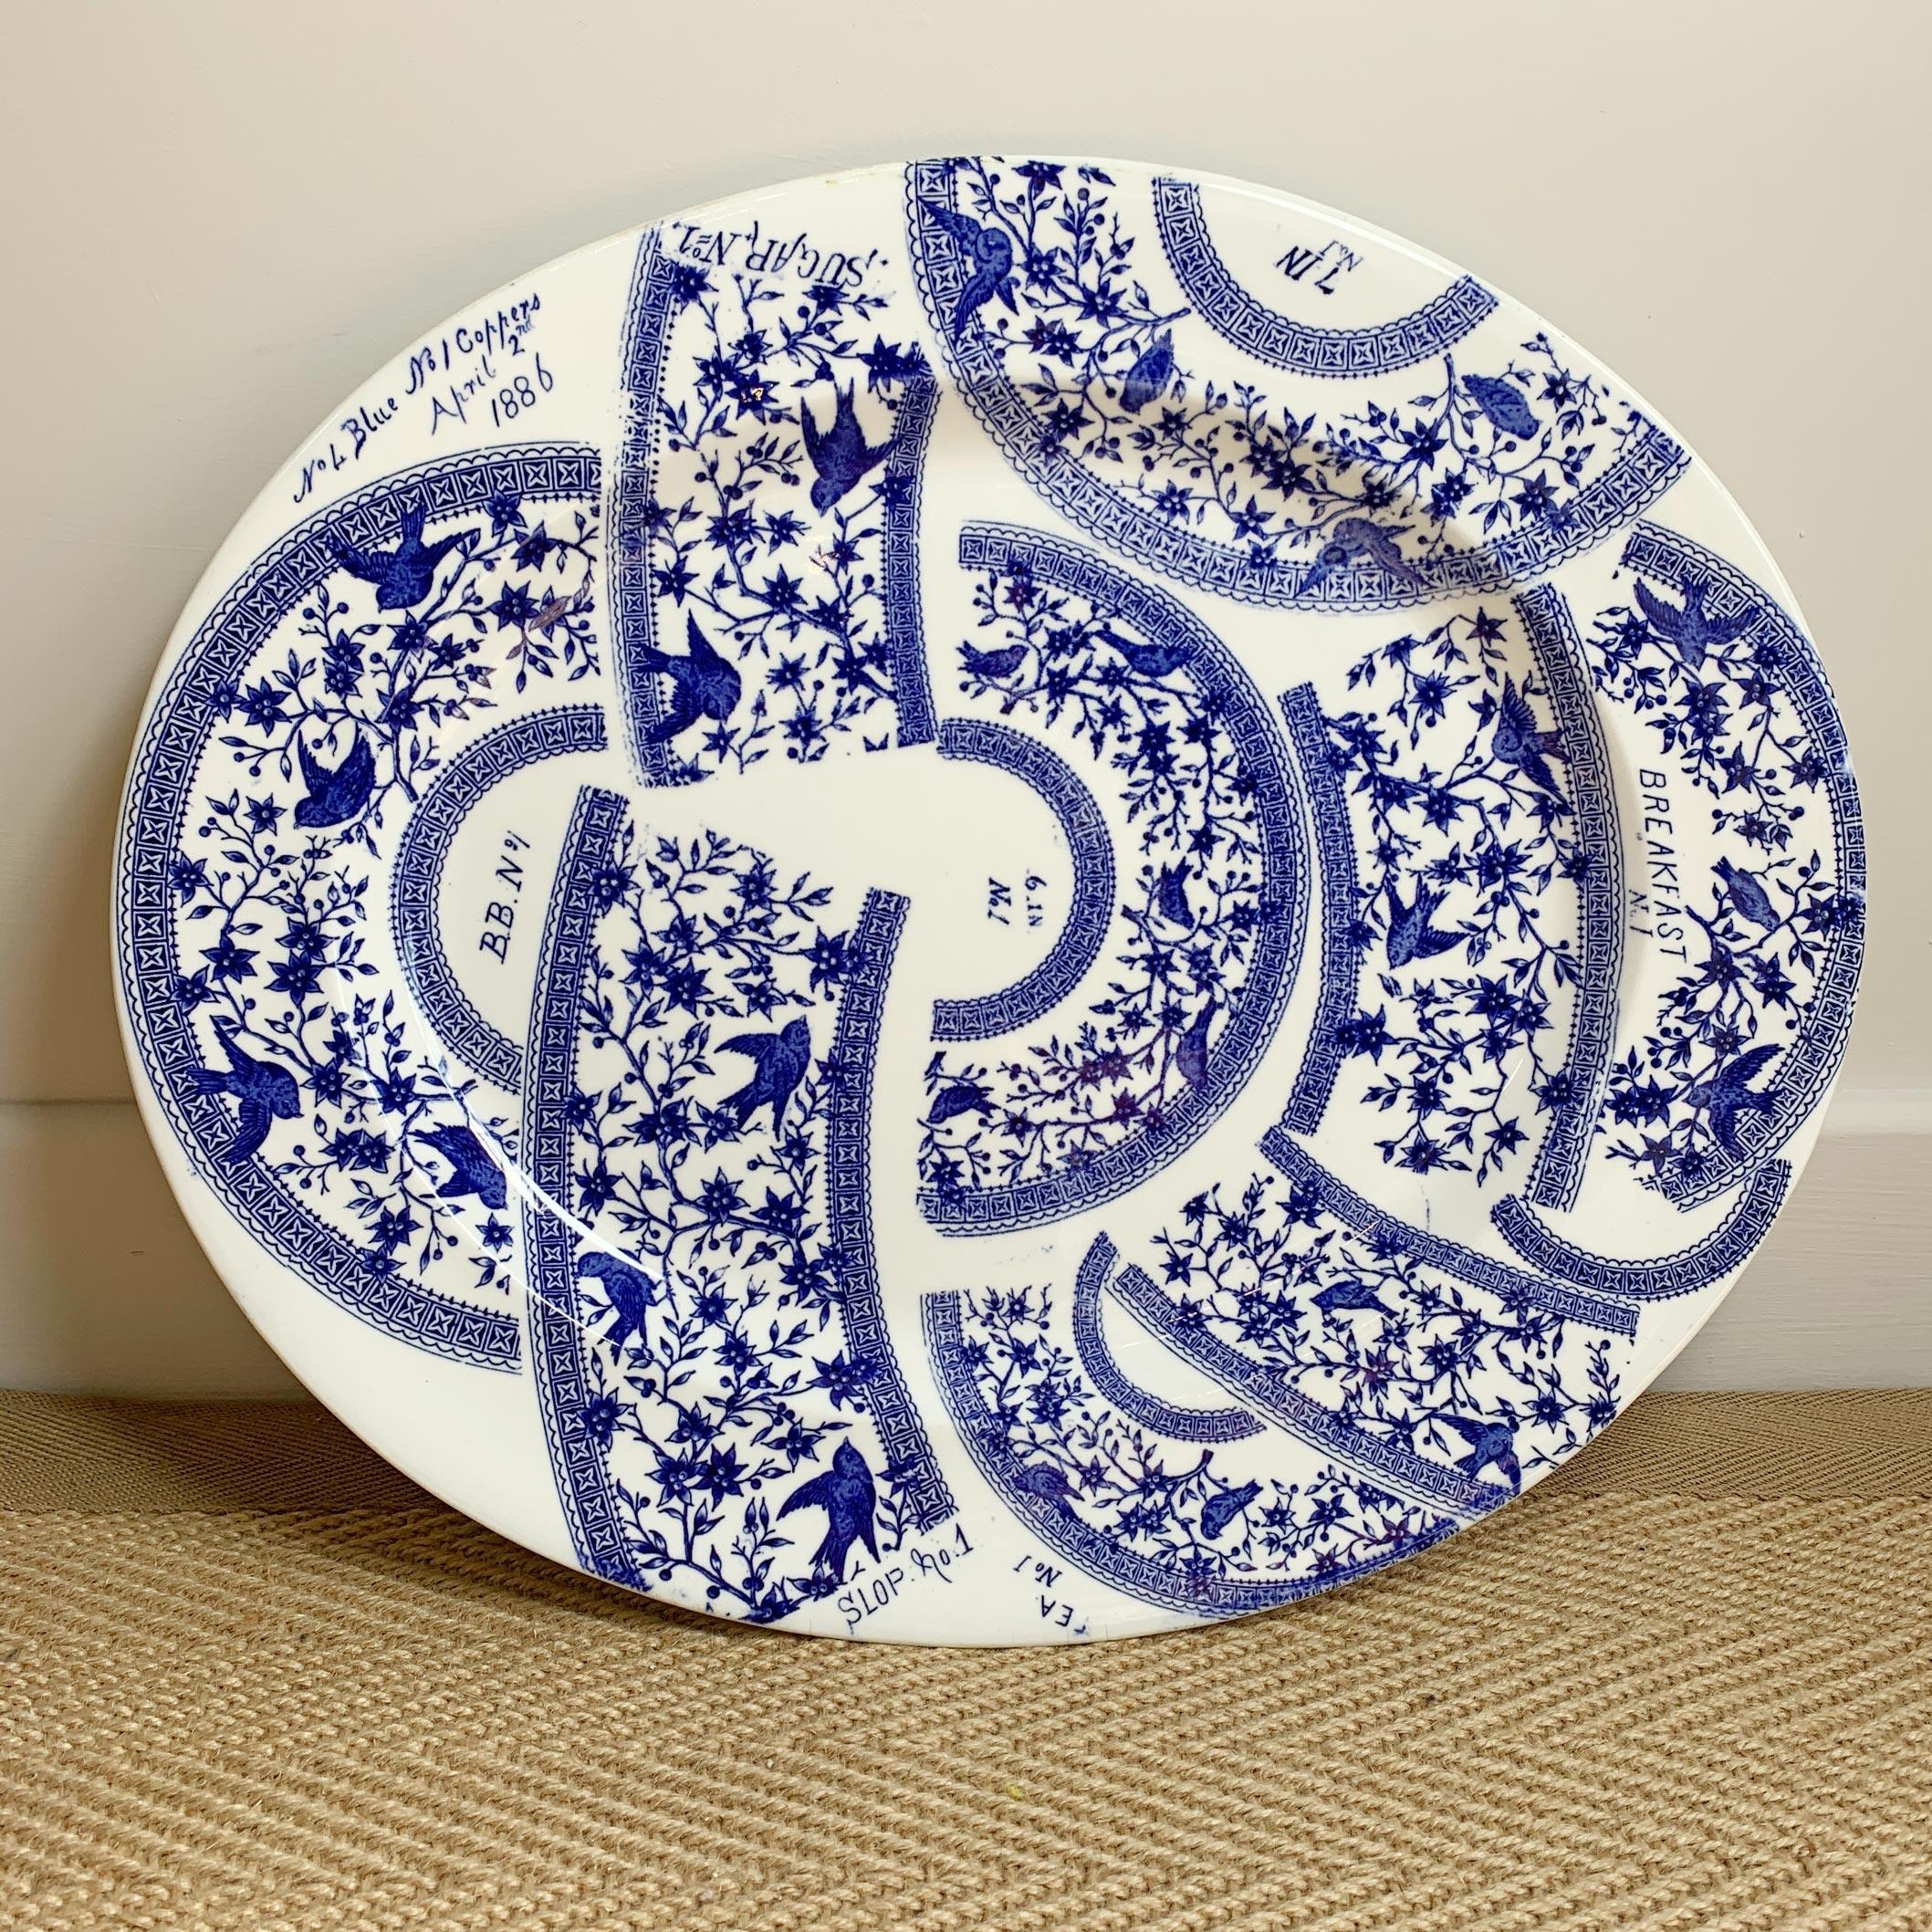 Très rare et inhabituelle assiette d'échantillon d'usine à motif de transfert bleu et blanc, pour la Derby Pottery, (plus tard la Royal Crown Derby pottery), motif de transfert datant de la fin du 19ème siècle, bien que l'assiette elle-même soit